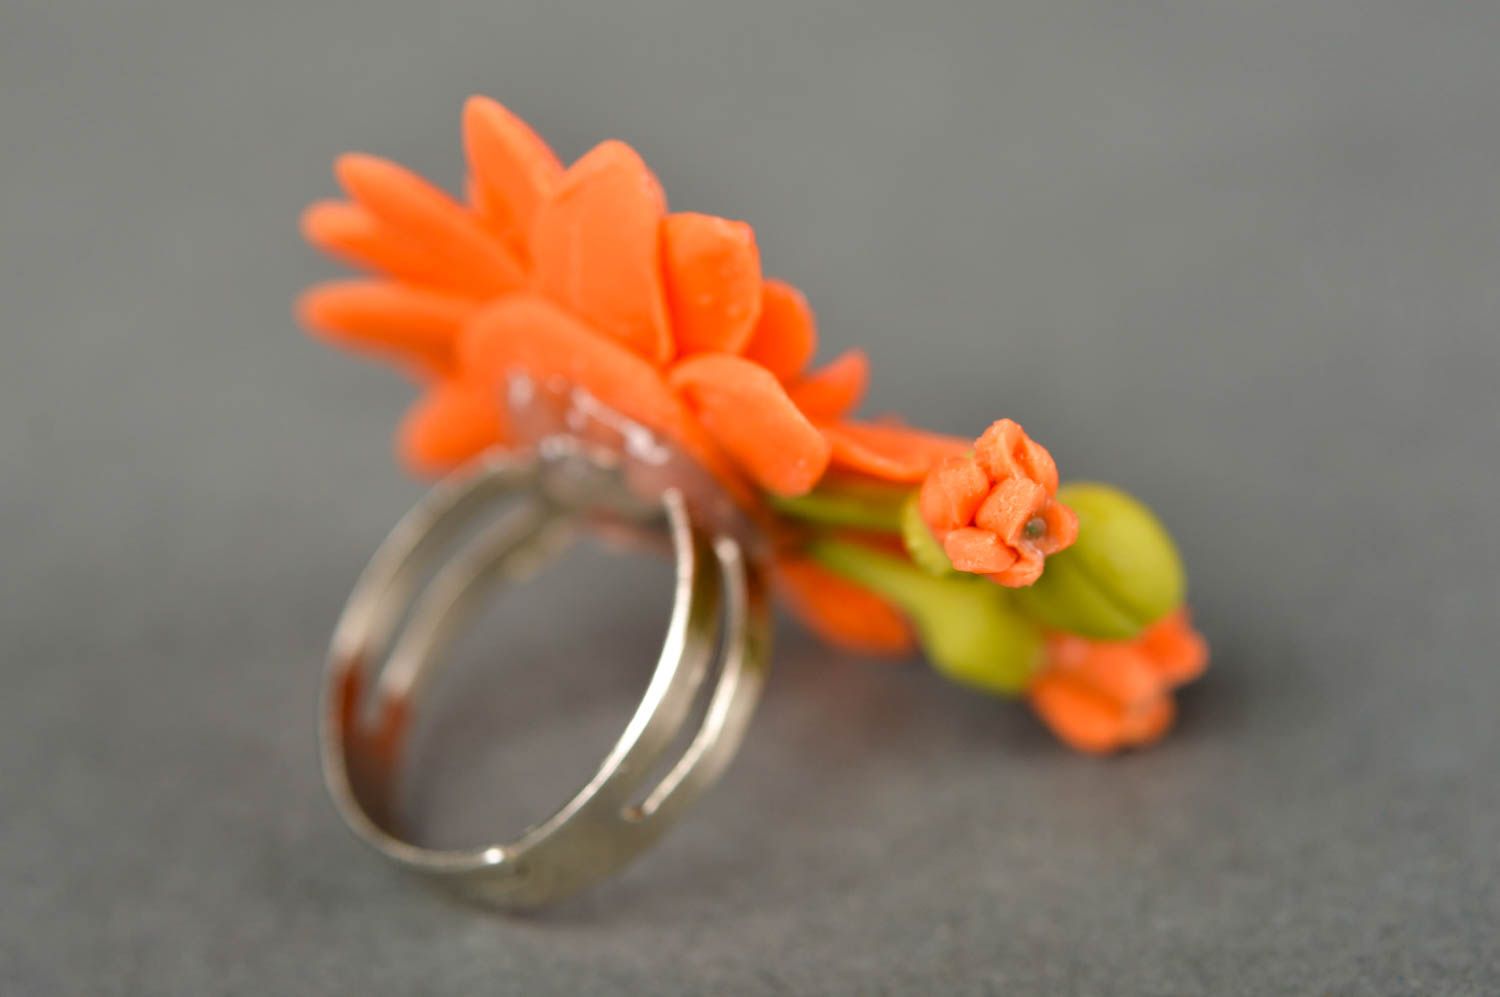 Stylish handmade flower ring artisan jewelry designs handmade accessories photo 3